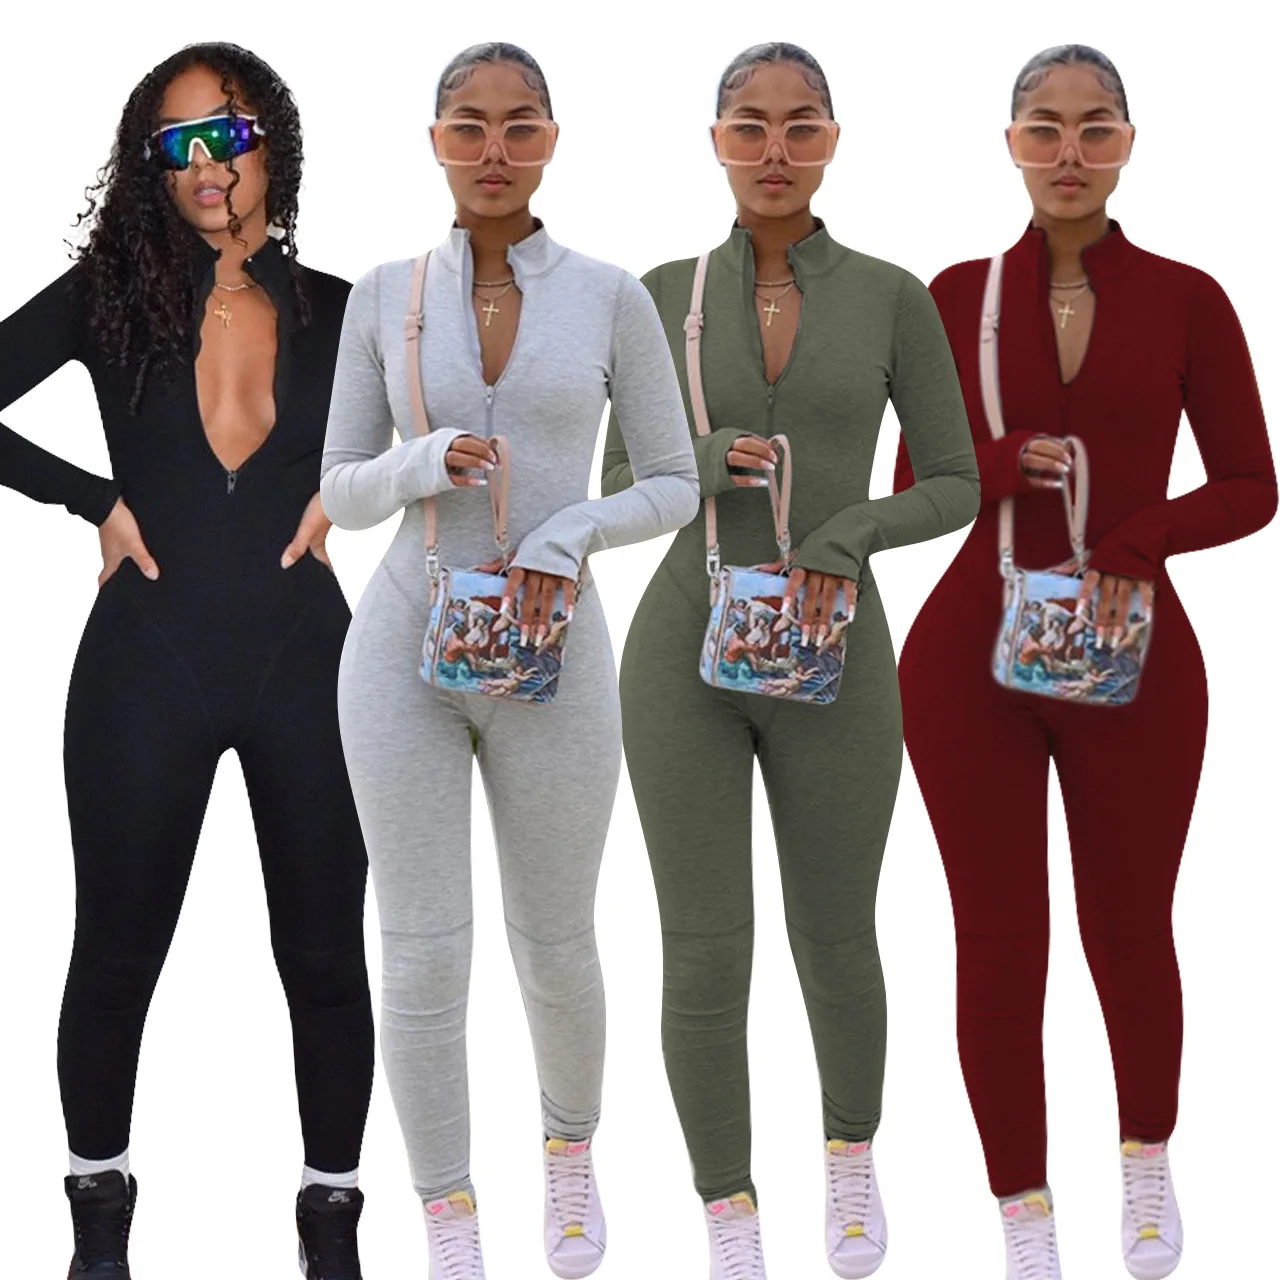 

Women Long Sleeve Full Length Solid Color Bodysuit Jumpsuit Rompers Playsuit Women Jumpsuit, Customized color